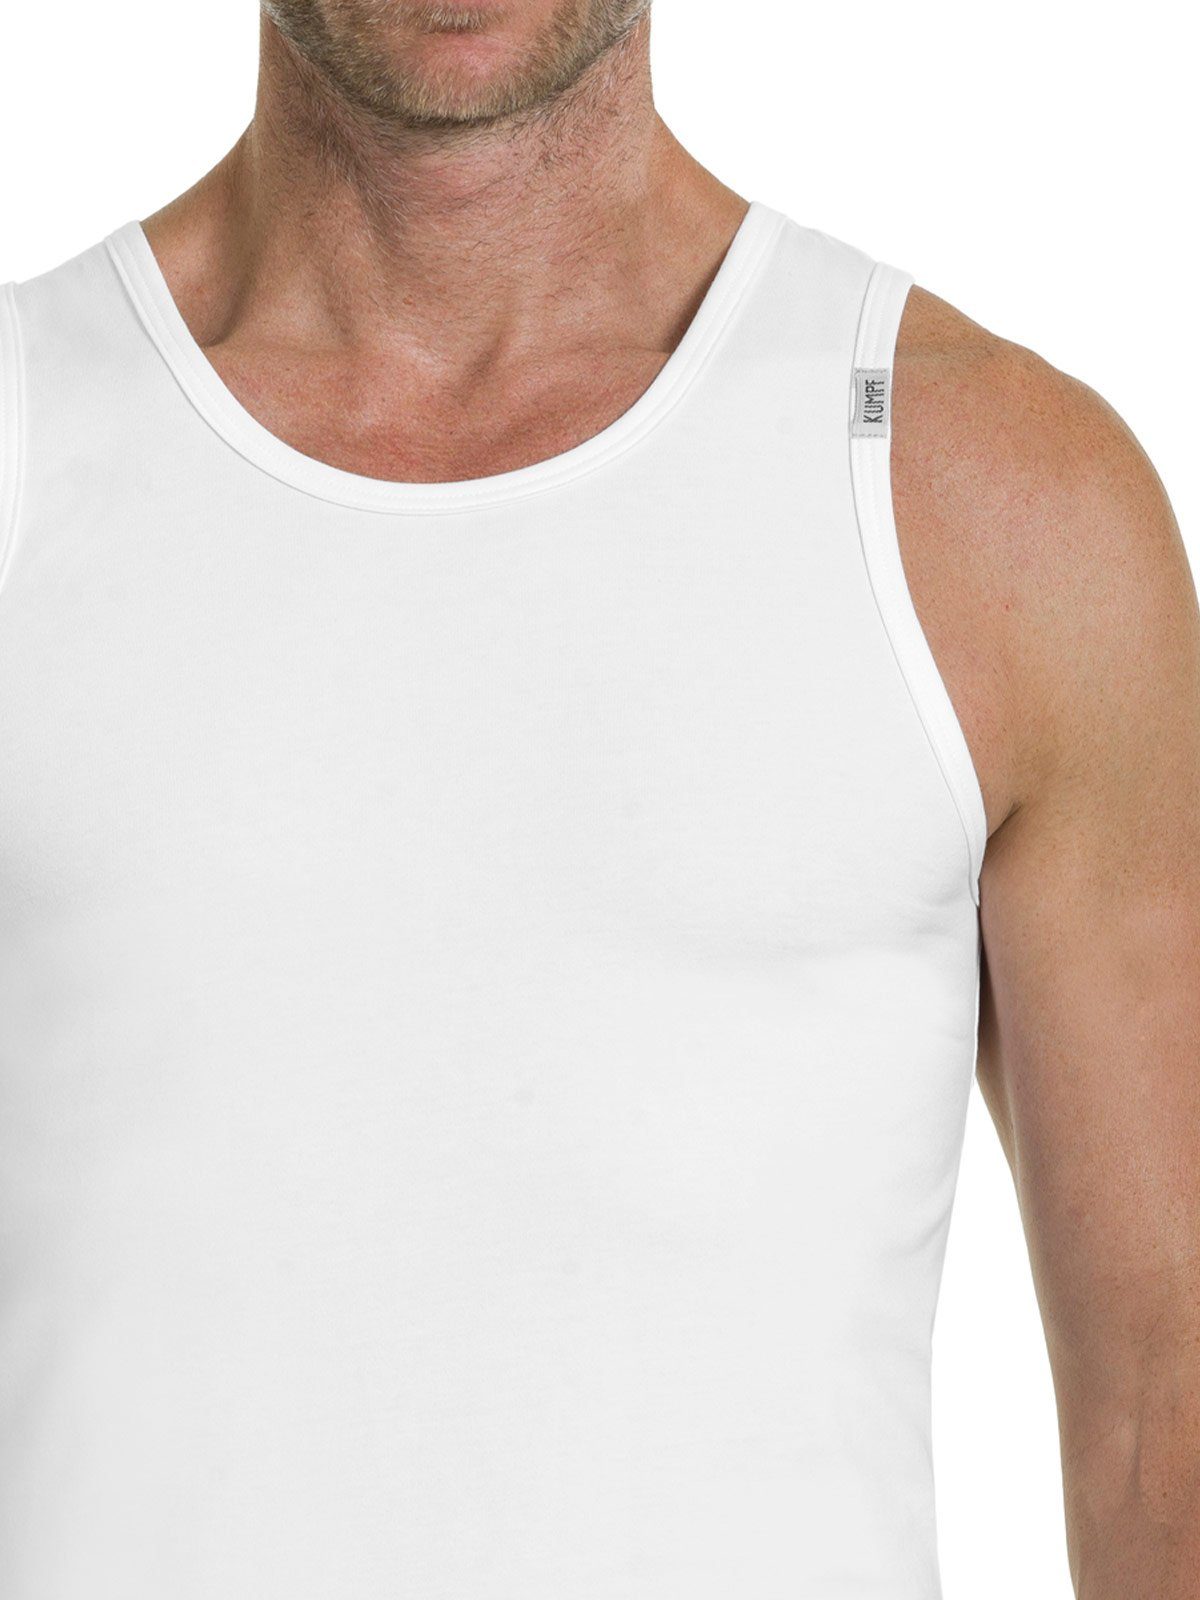 KUMPF Achselhemd 2er Sparpack Herren Cotton (Spar-Set, 2-St) Unterhemd weiss Bio hohe Markenqualität